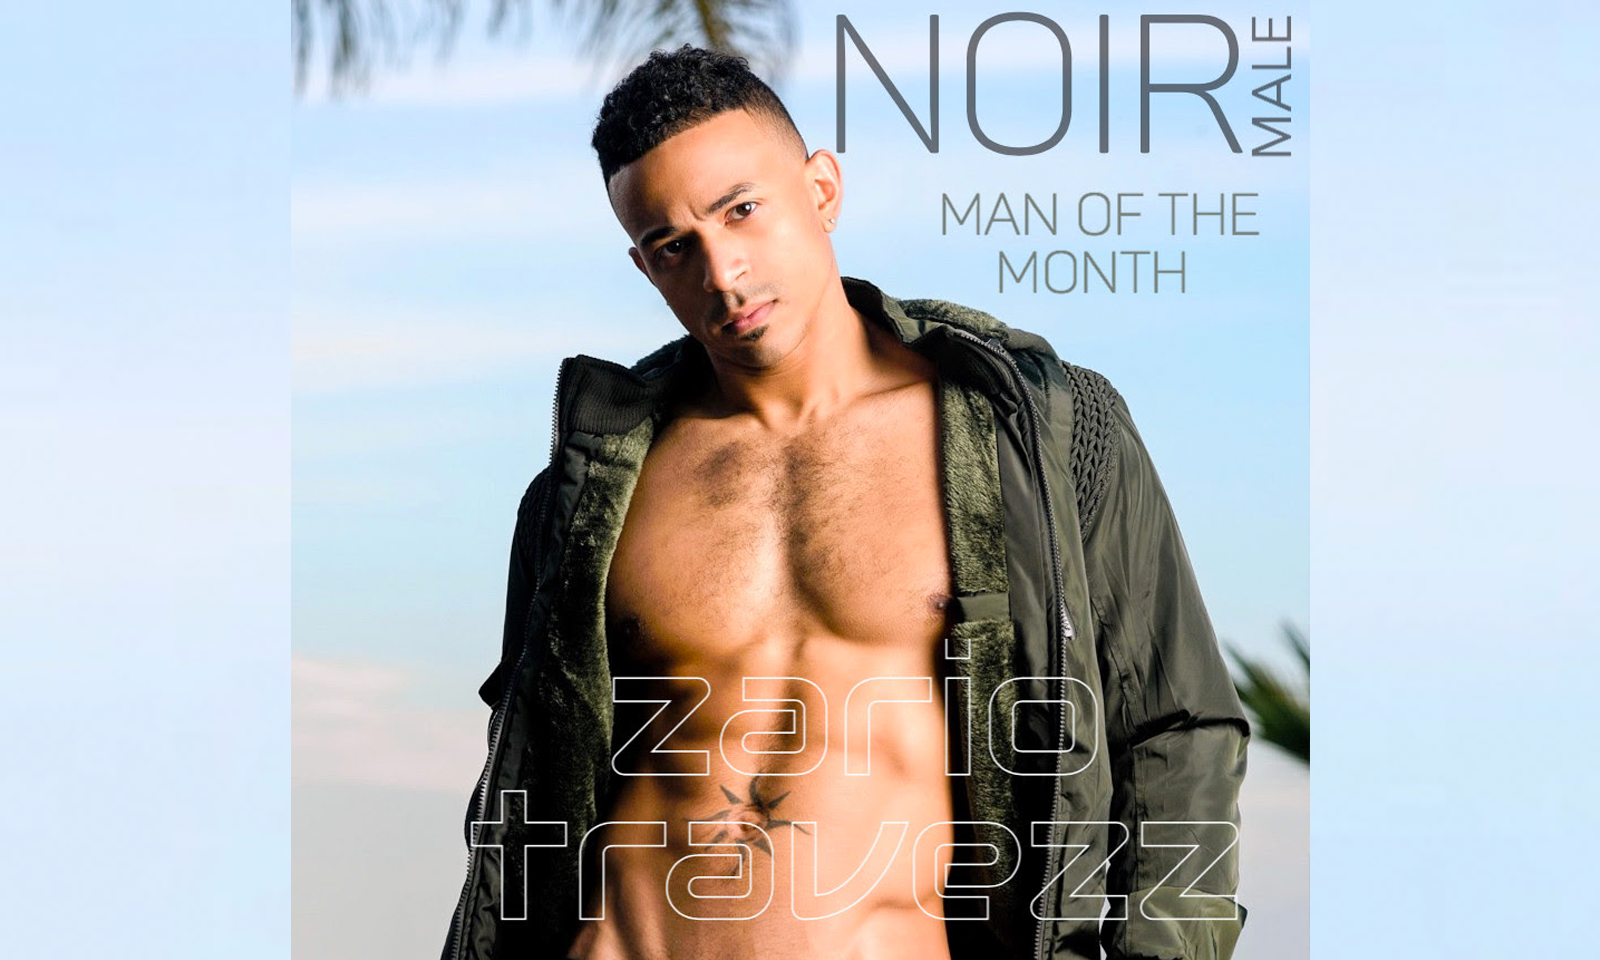 Fan Favorite Zario Travezz is Noir Male’s Man Of The Month